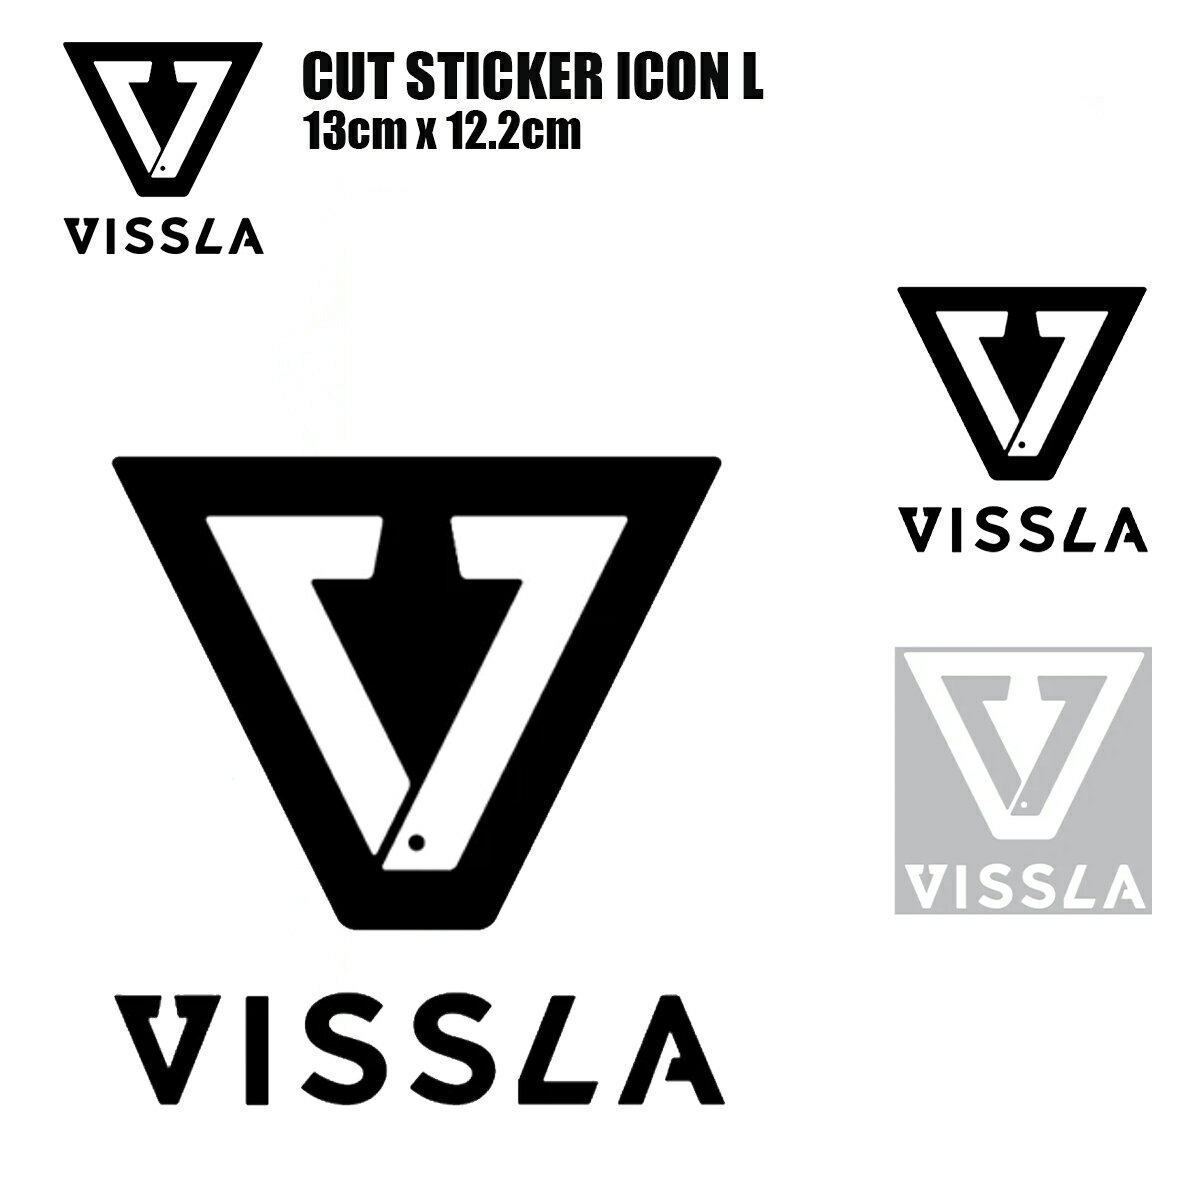 ヴィスラ ステッカ ー VISSLA CUT STICKER ICON L カットステッカー アイコン Lサイズ カッティングタイプ サーフブランドステッカー 正規品